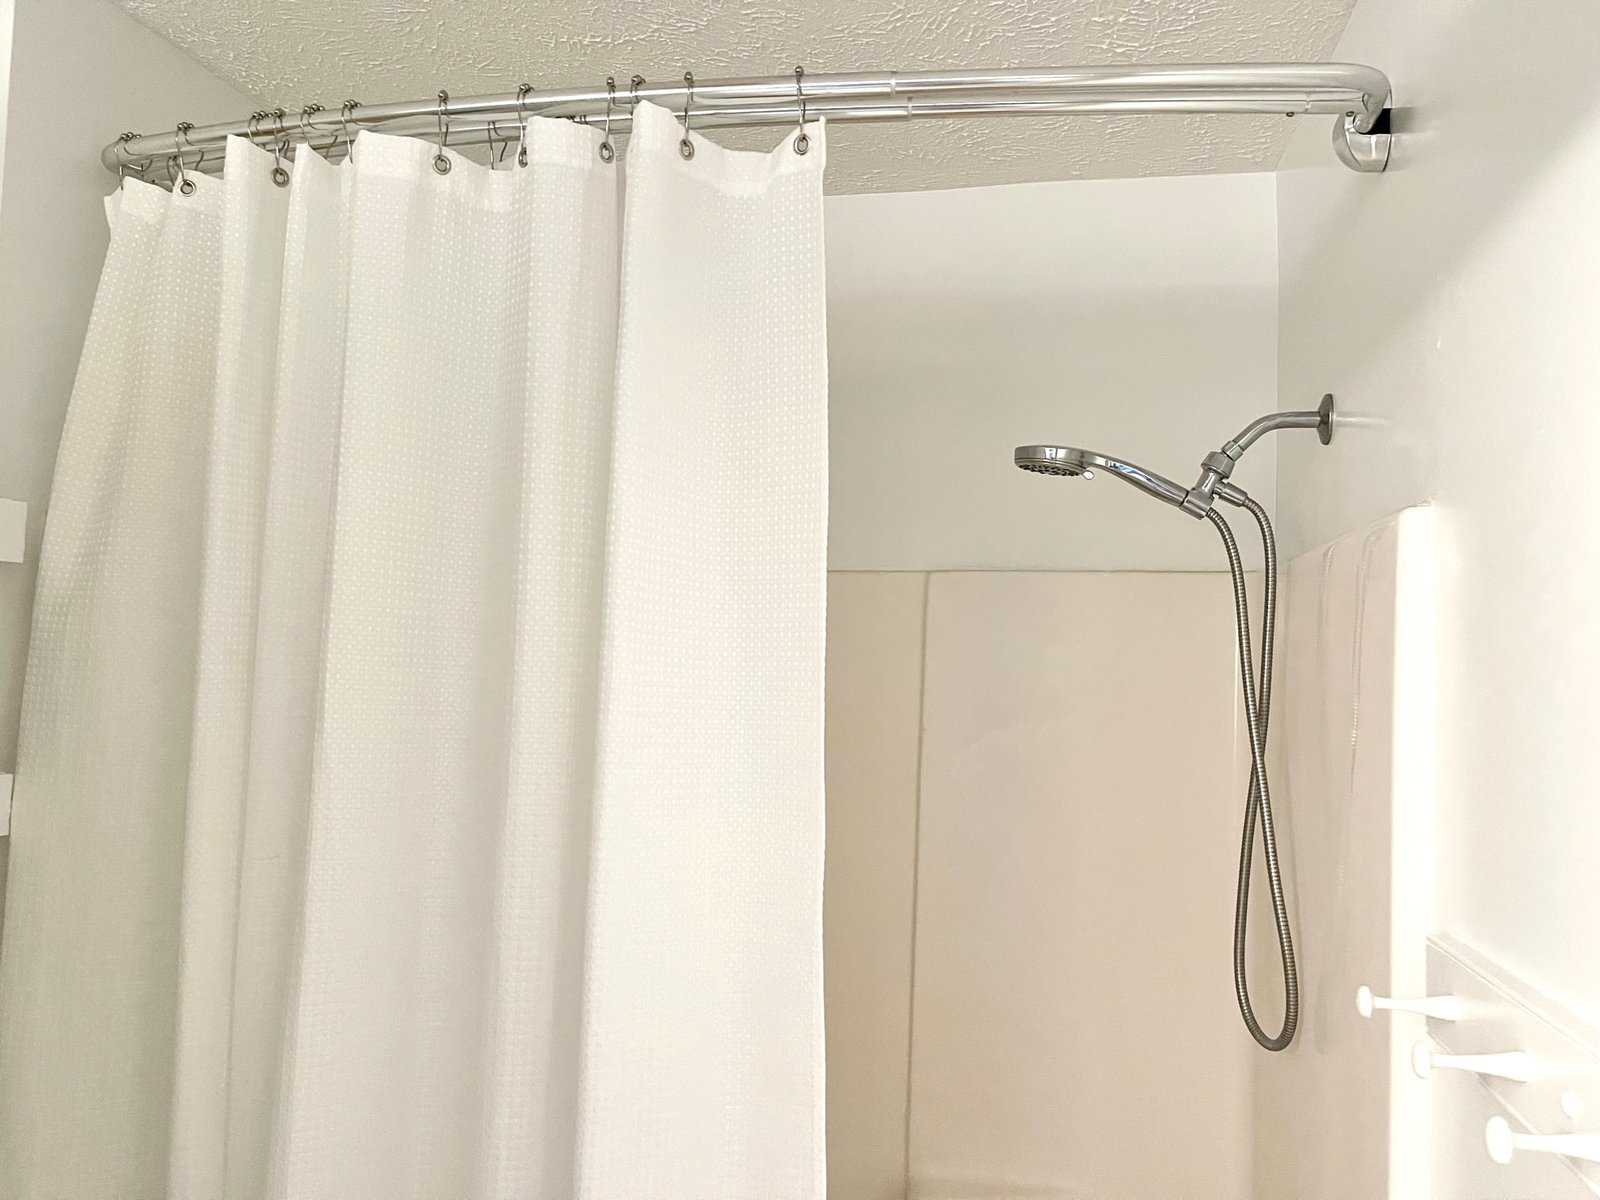 replacing shower glass door double rod